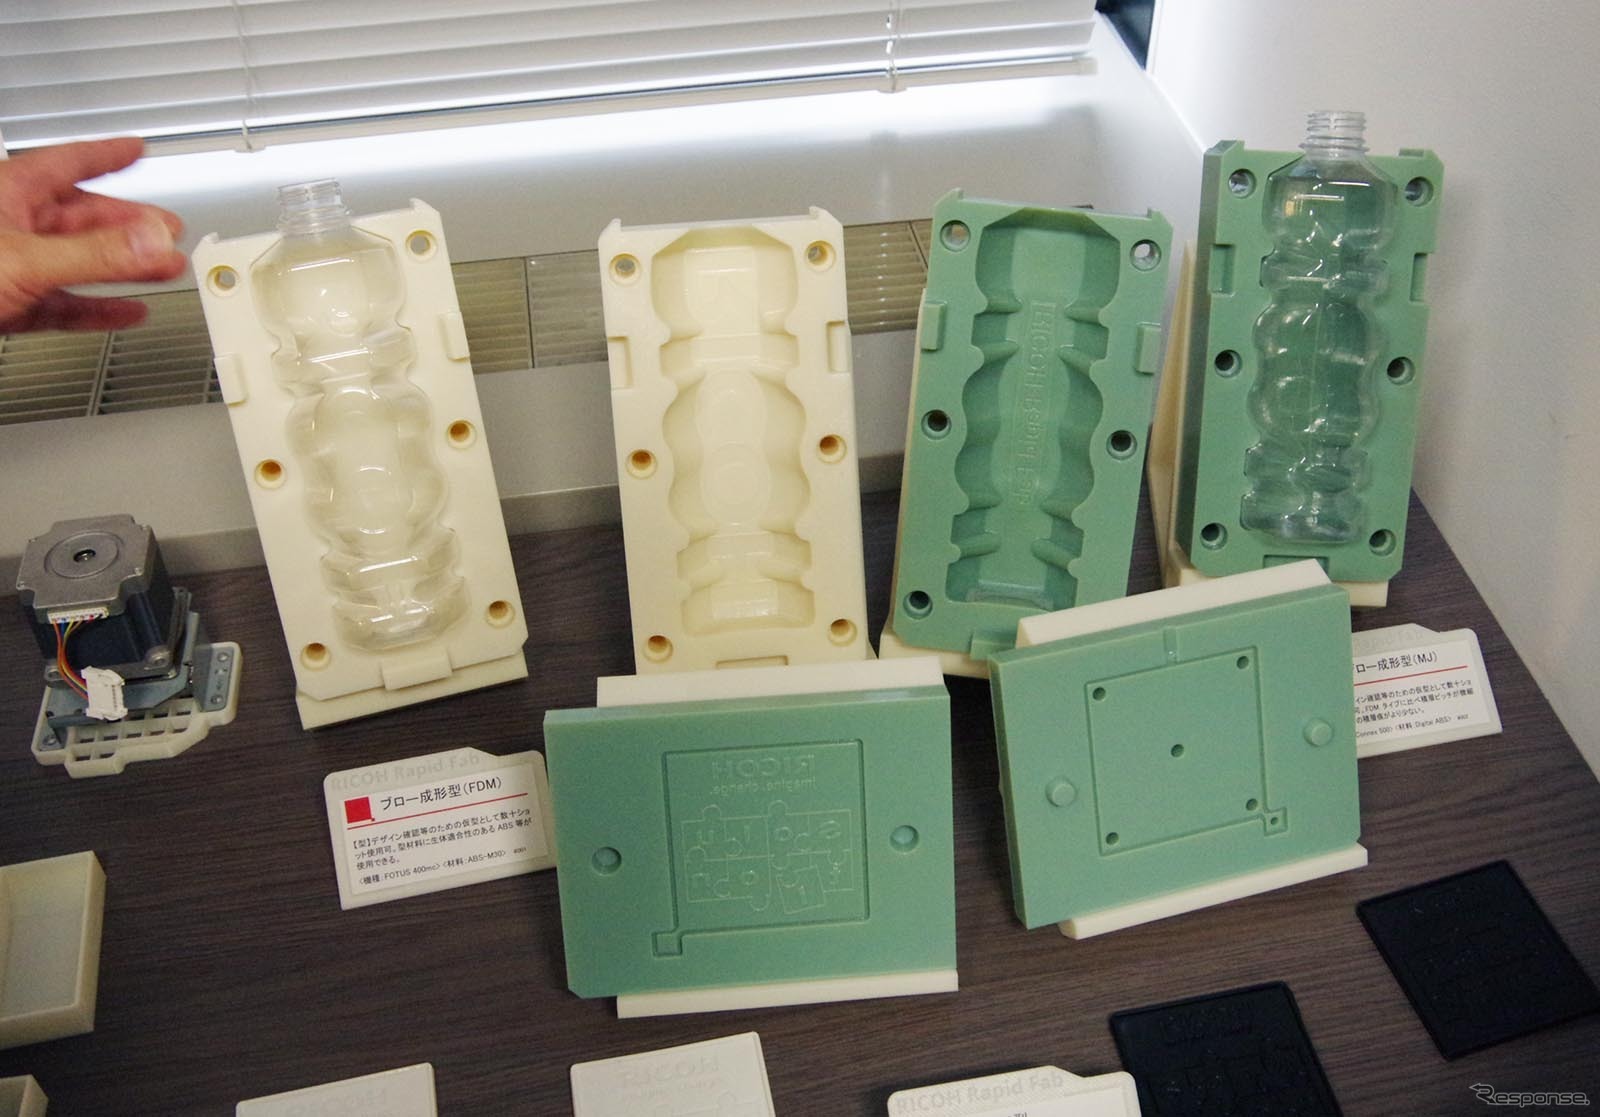 3Dプリンタを用いた製品・治具の例